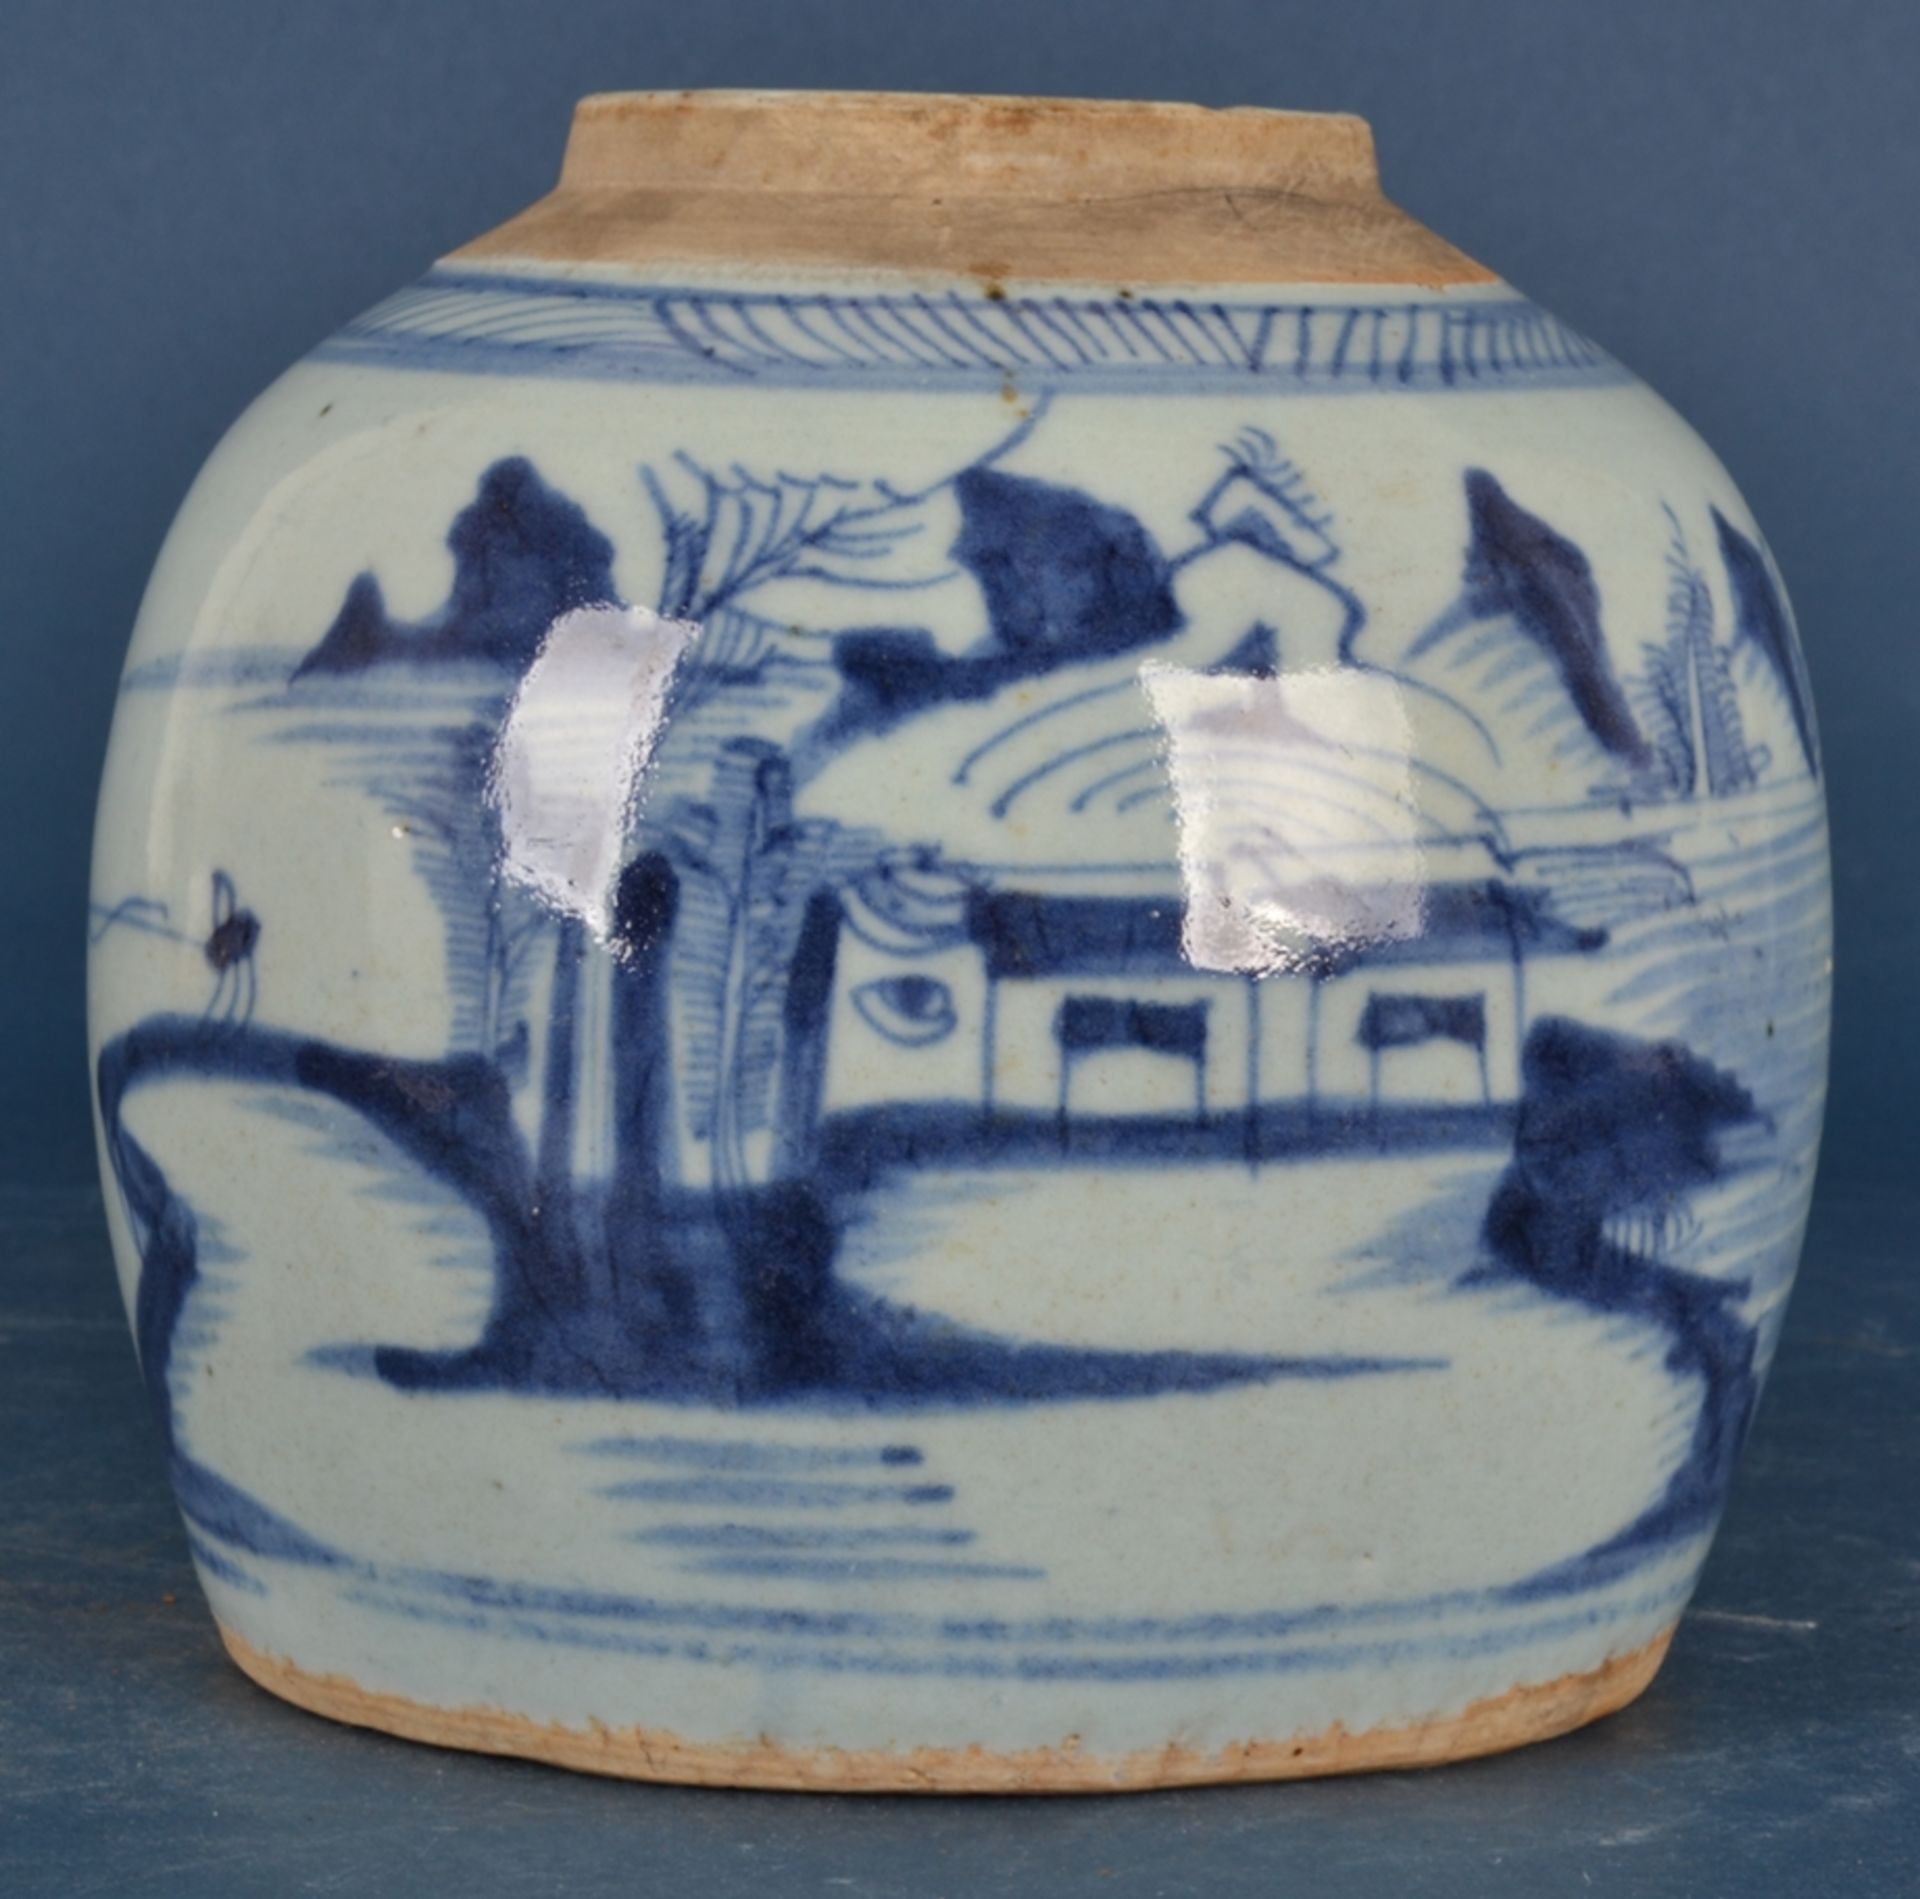 Antiker, chinesischer Ingwer-Jar/Ingwer-Topf. Blau-grauer Landschaftsdekor, alter vom Boden in die